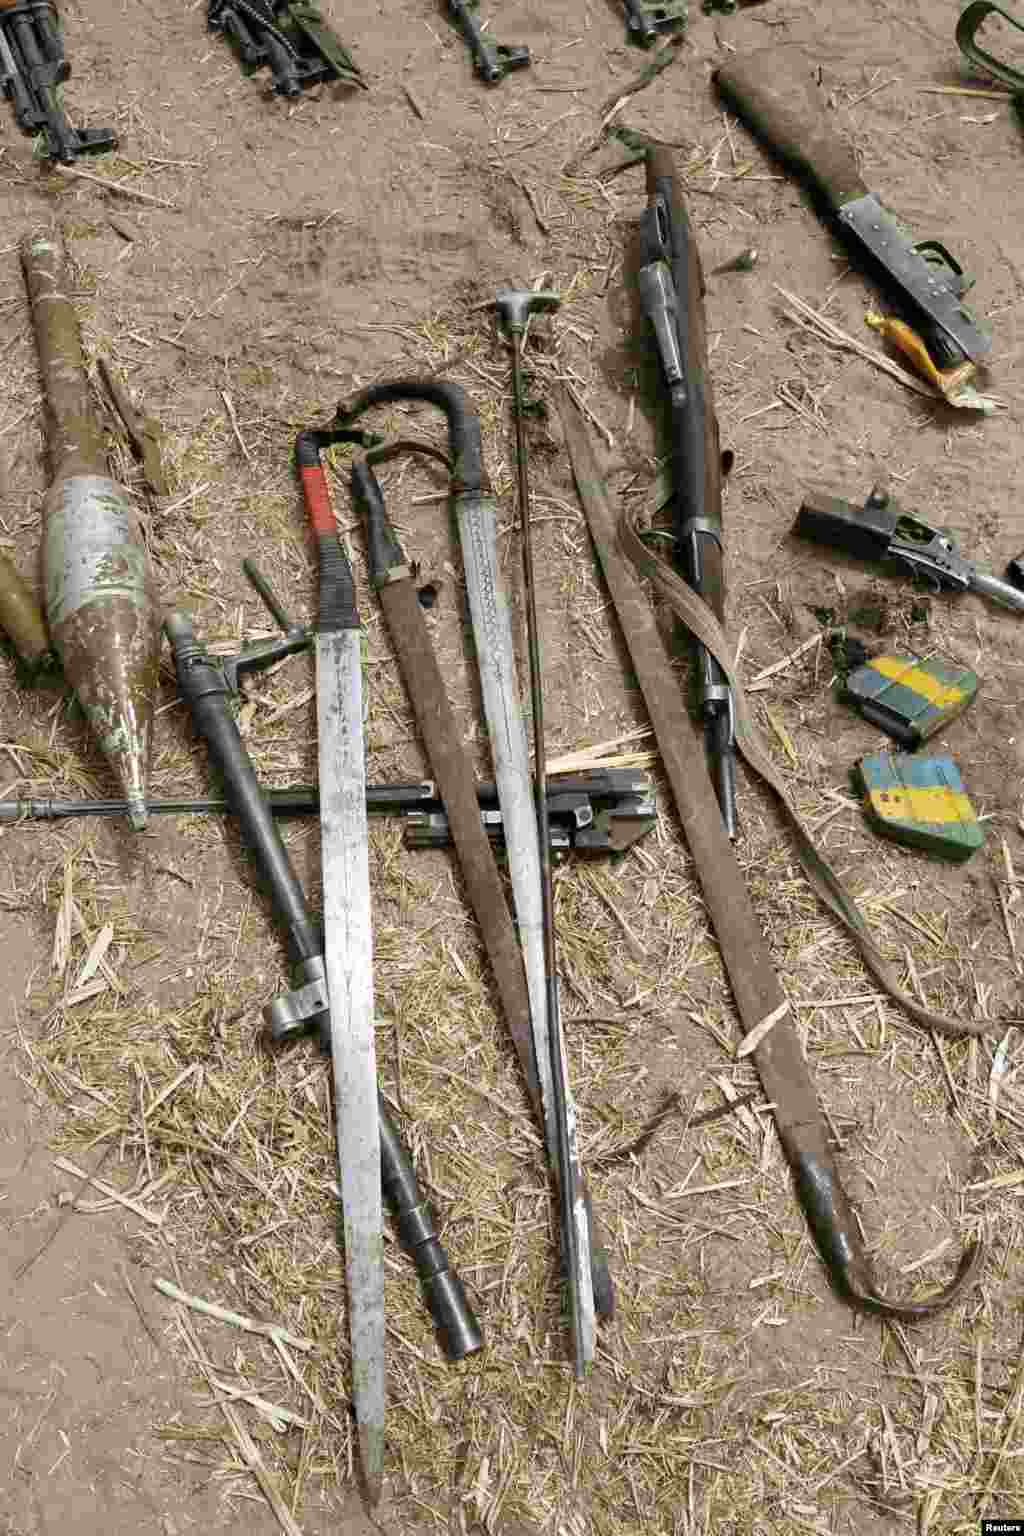 Des armes appartenant au groupe Boko Haram que les militaires tchadiens disent avoir récupérées au cours de la bataille de Gambaru, le 26 février 2015.